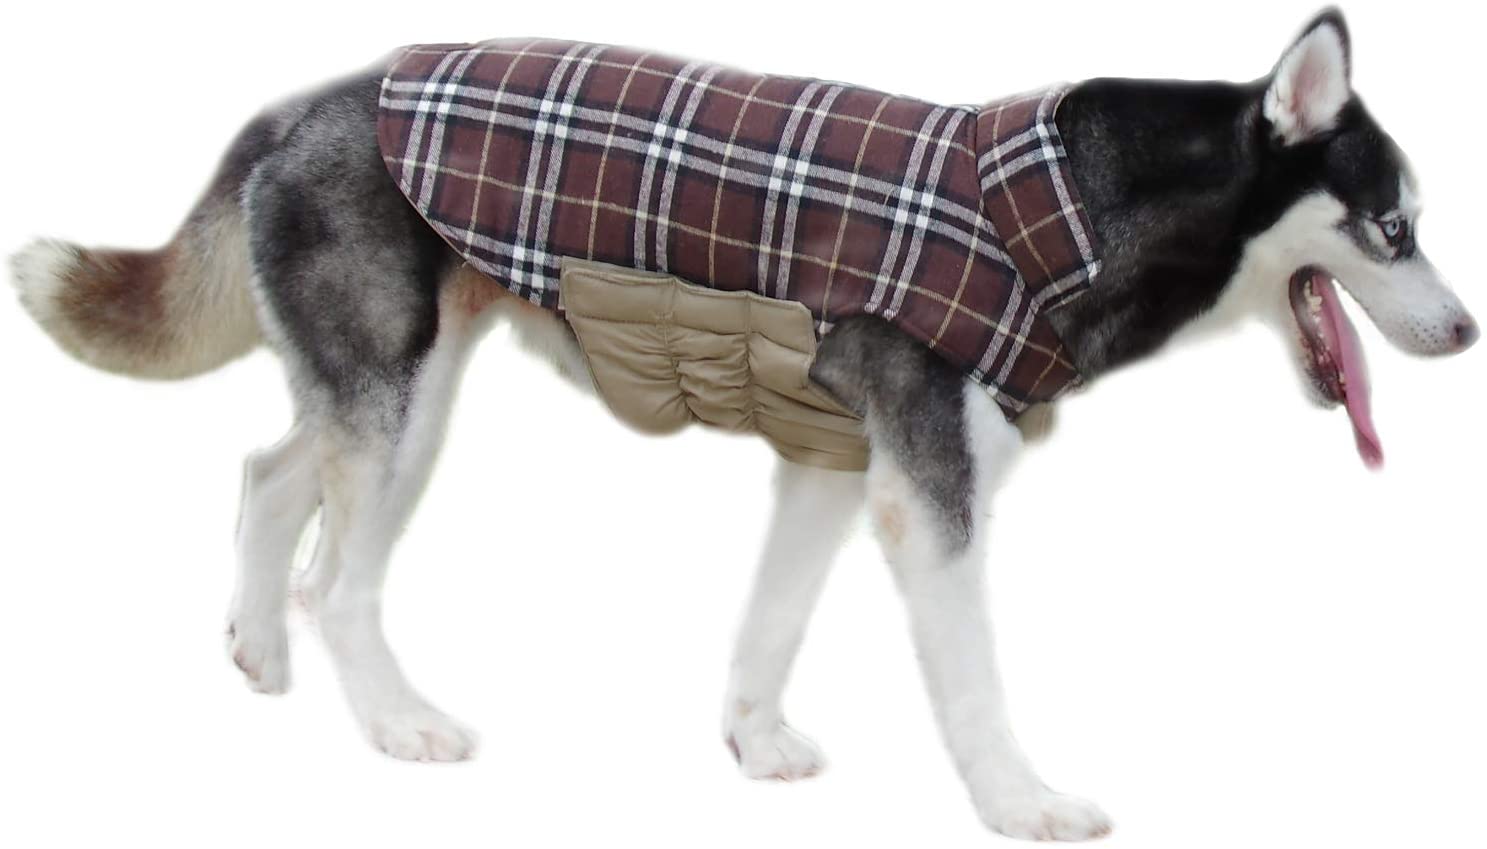  ThinkPet Chaqueta Perro Reversible Ropa para Perro Escocesa Abrigo Perro Impermeable de Cuadros británicos para Perros medianos 